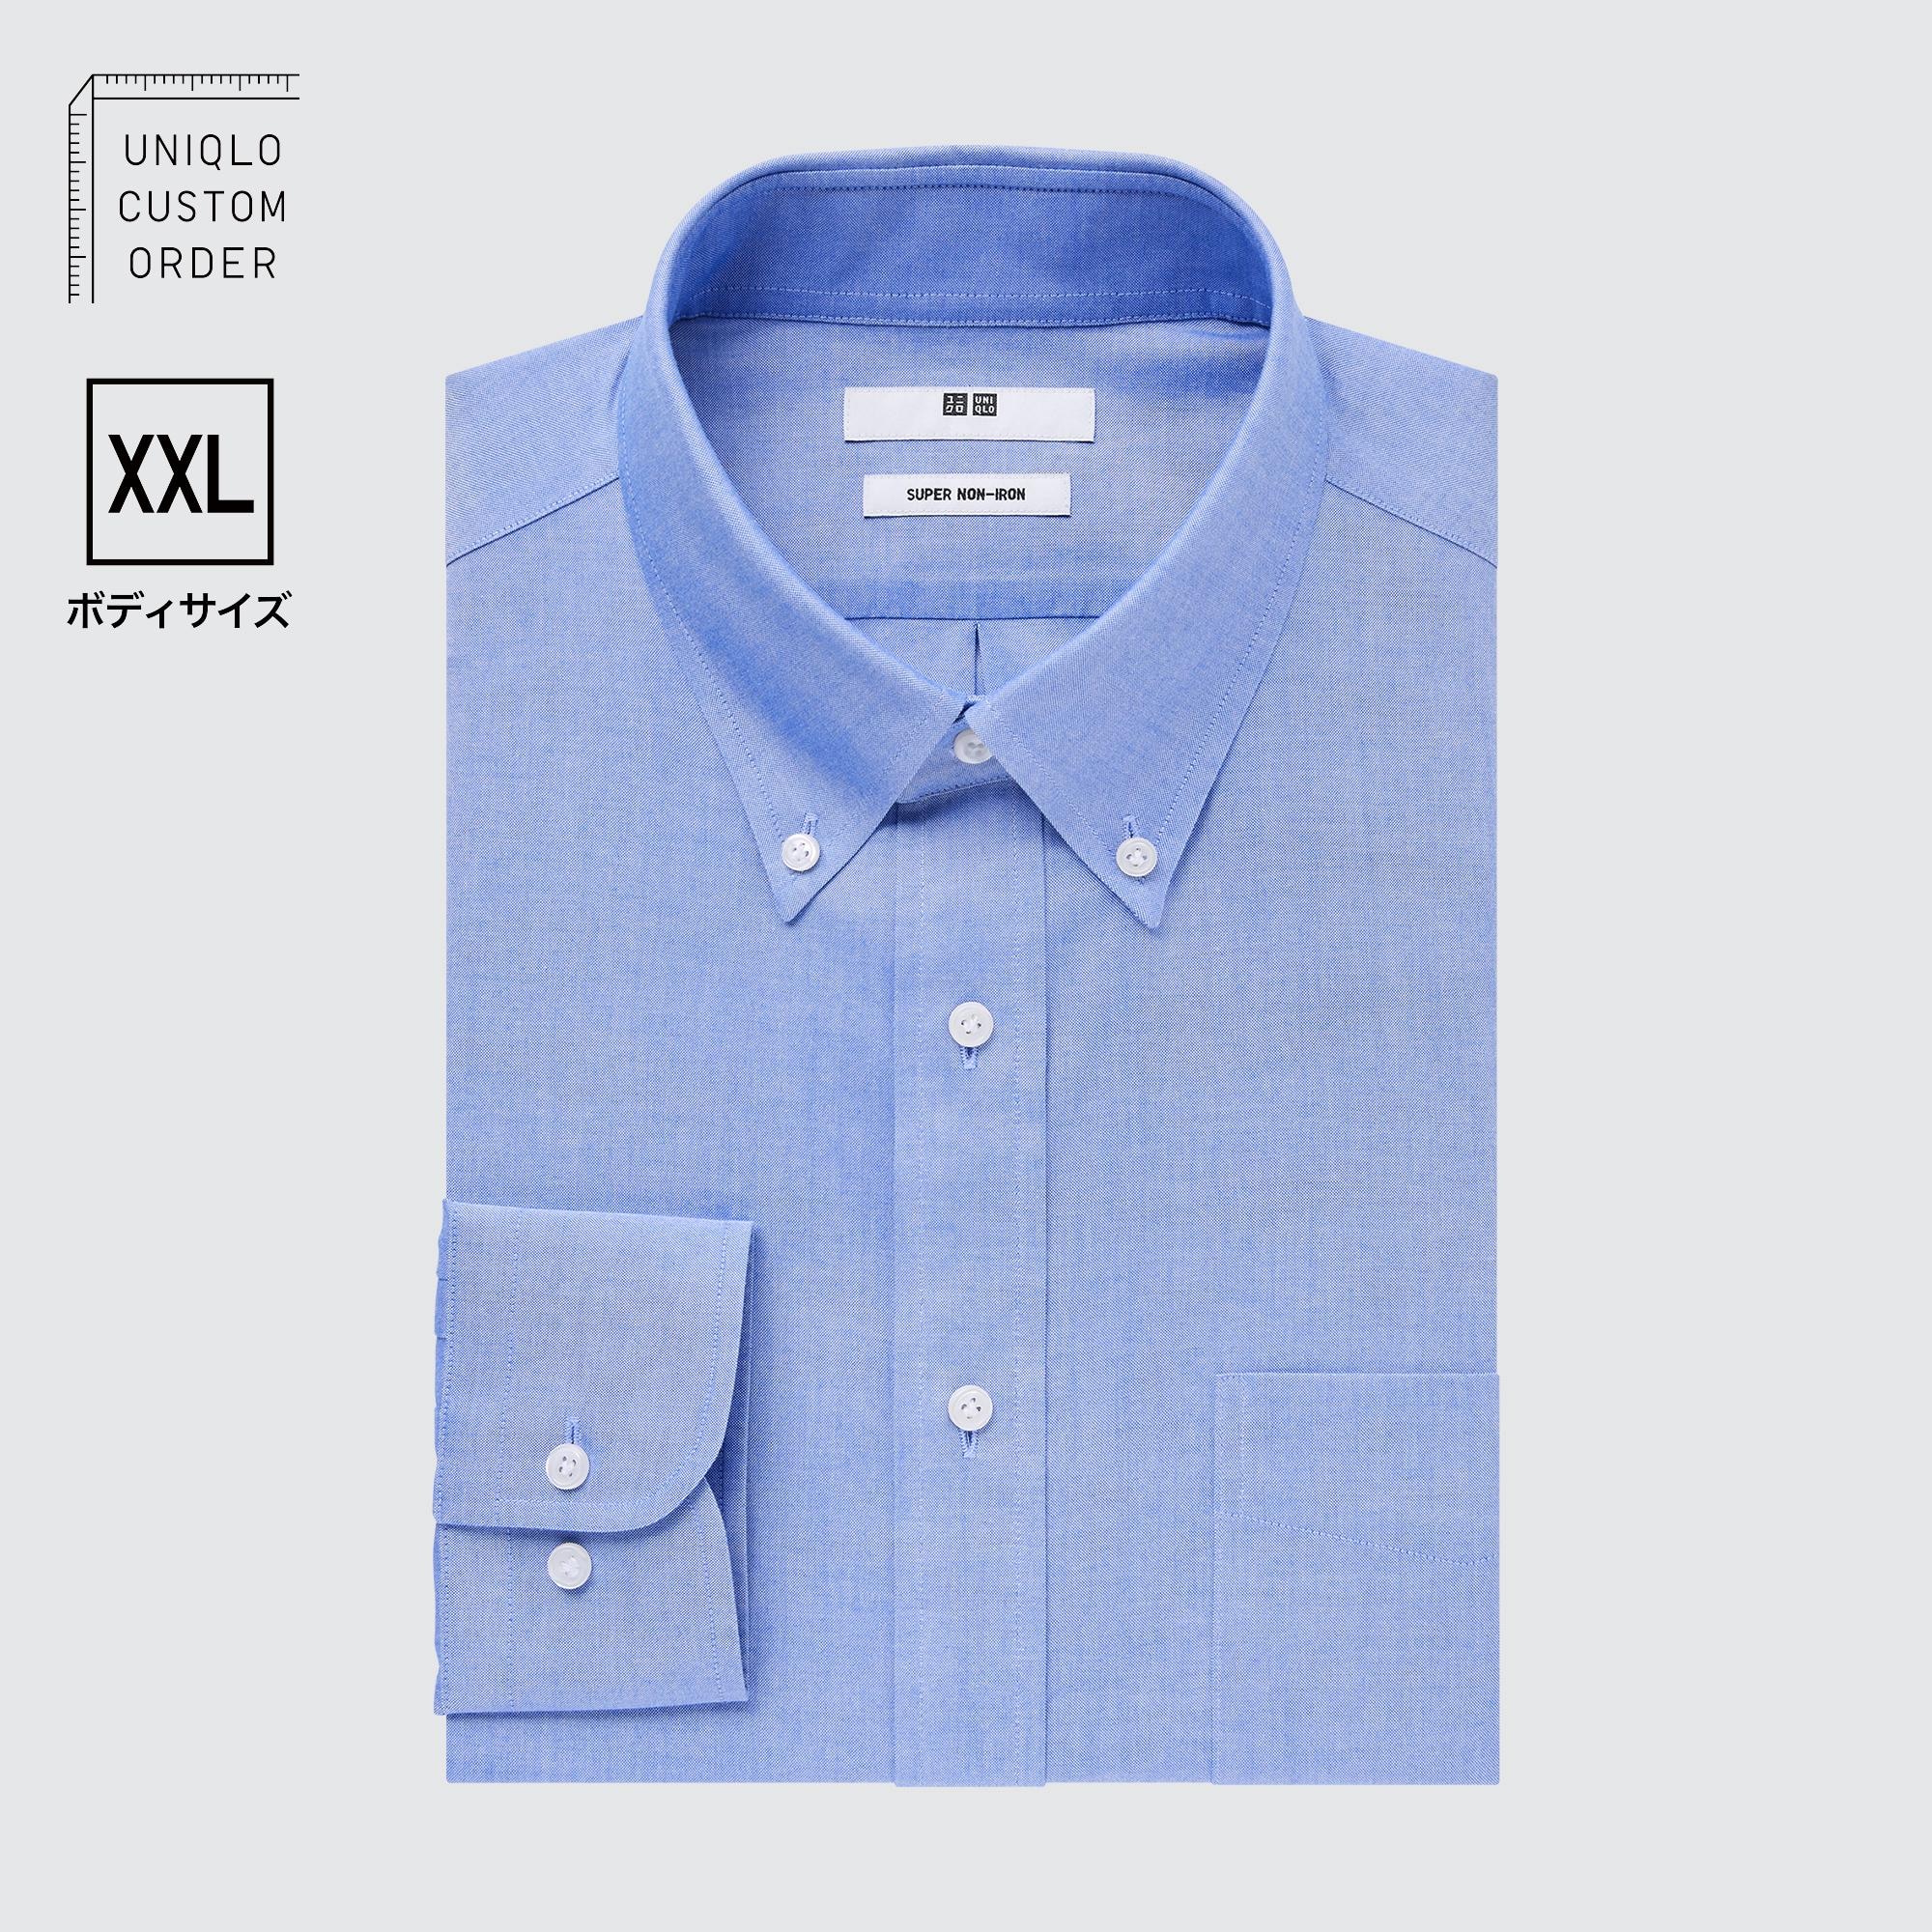 Рубашка UNIQLO Non-iron приталенного кроя с воротником на пуговицах XXL, синий